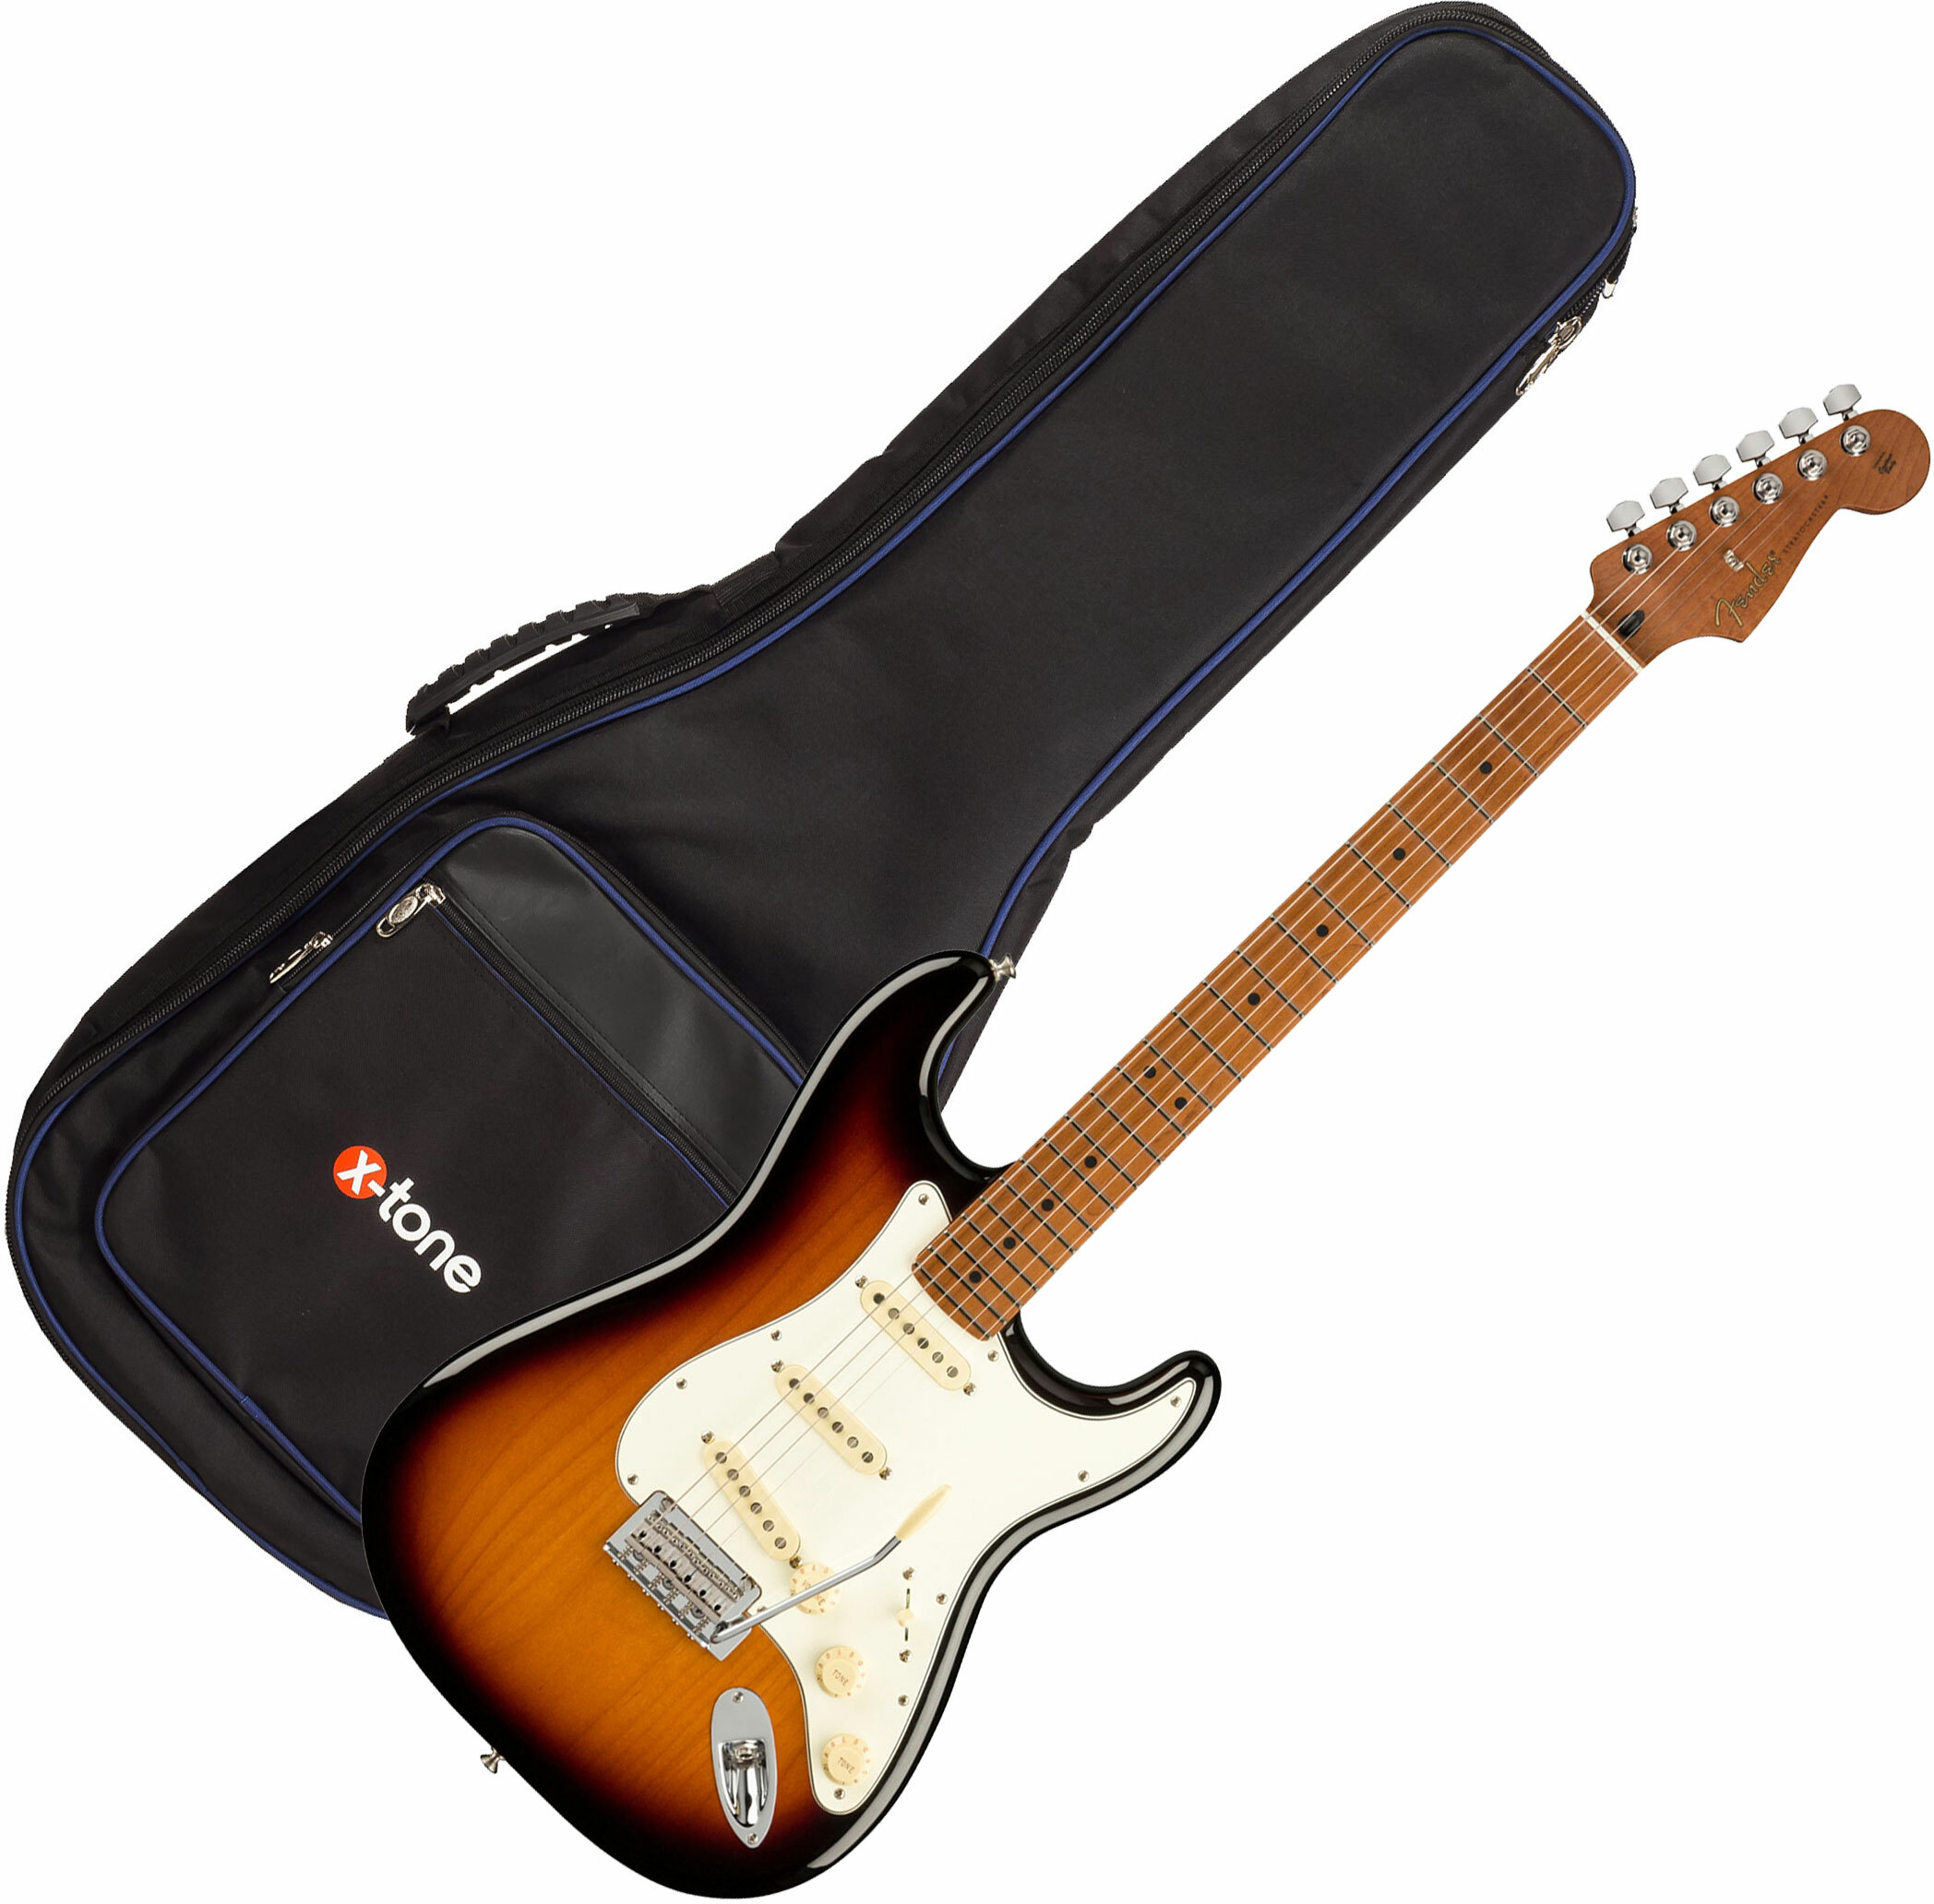 Fender Strat Player 1959 Texas Special Ltd Mex 3s Mn +housse X-tone 2015 Ele-bk - 2-color Sunburst - Electric guitar set - Main picture